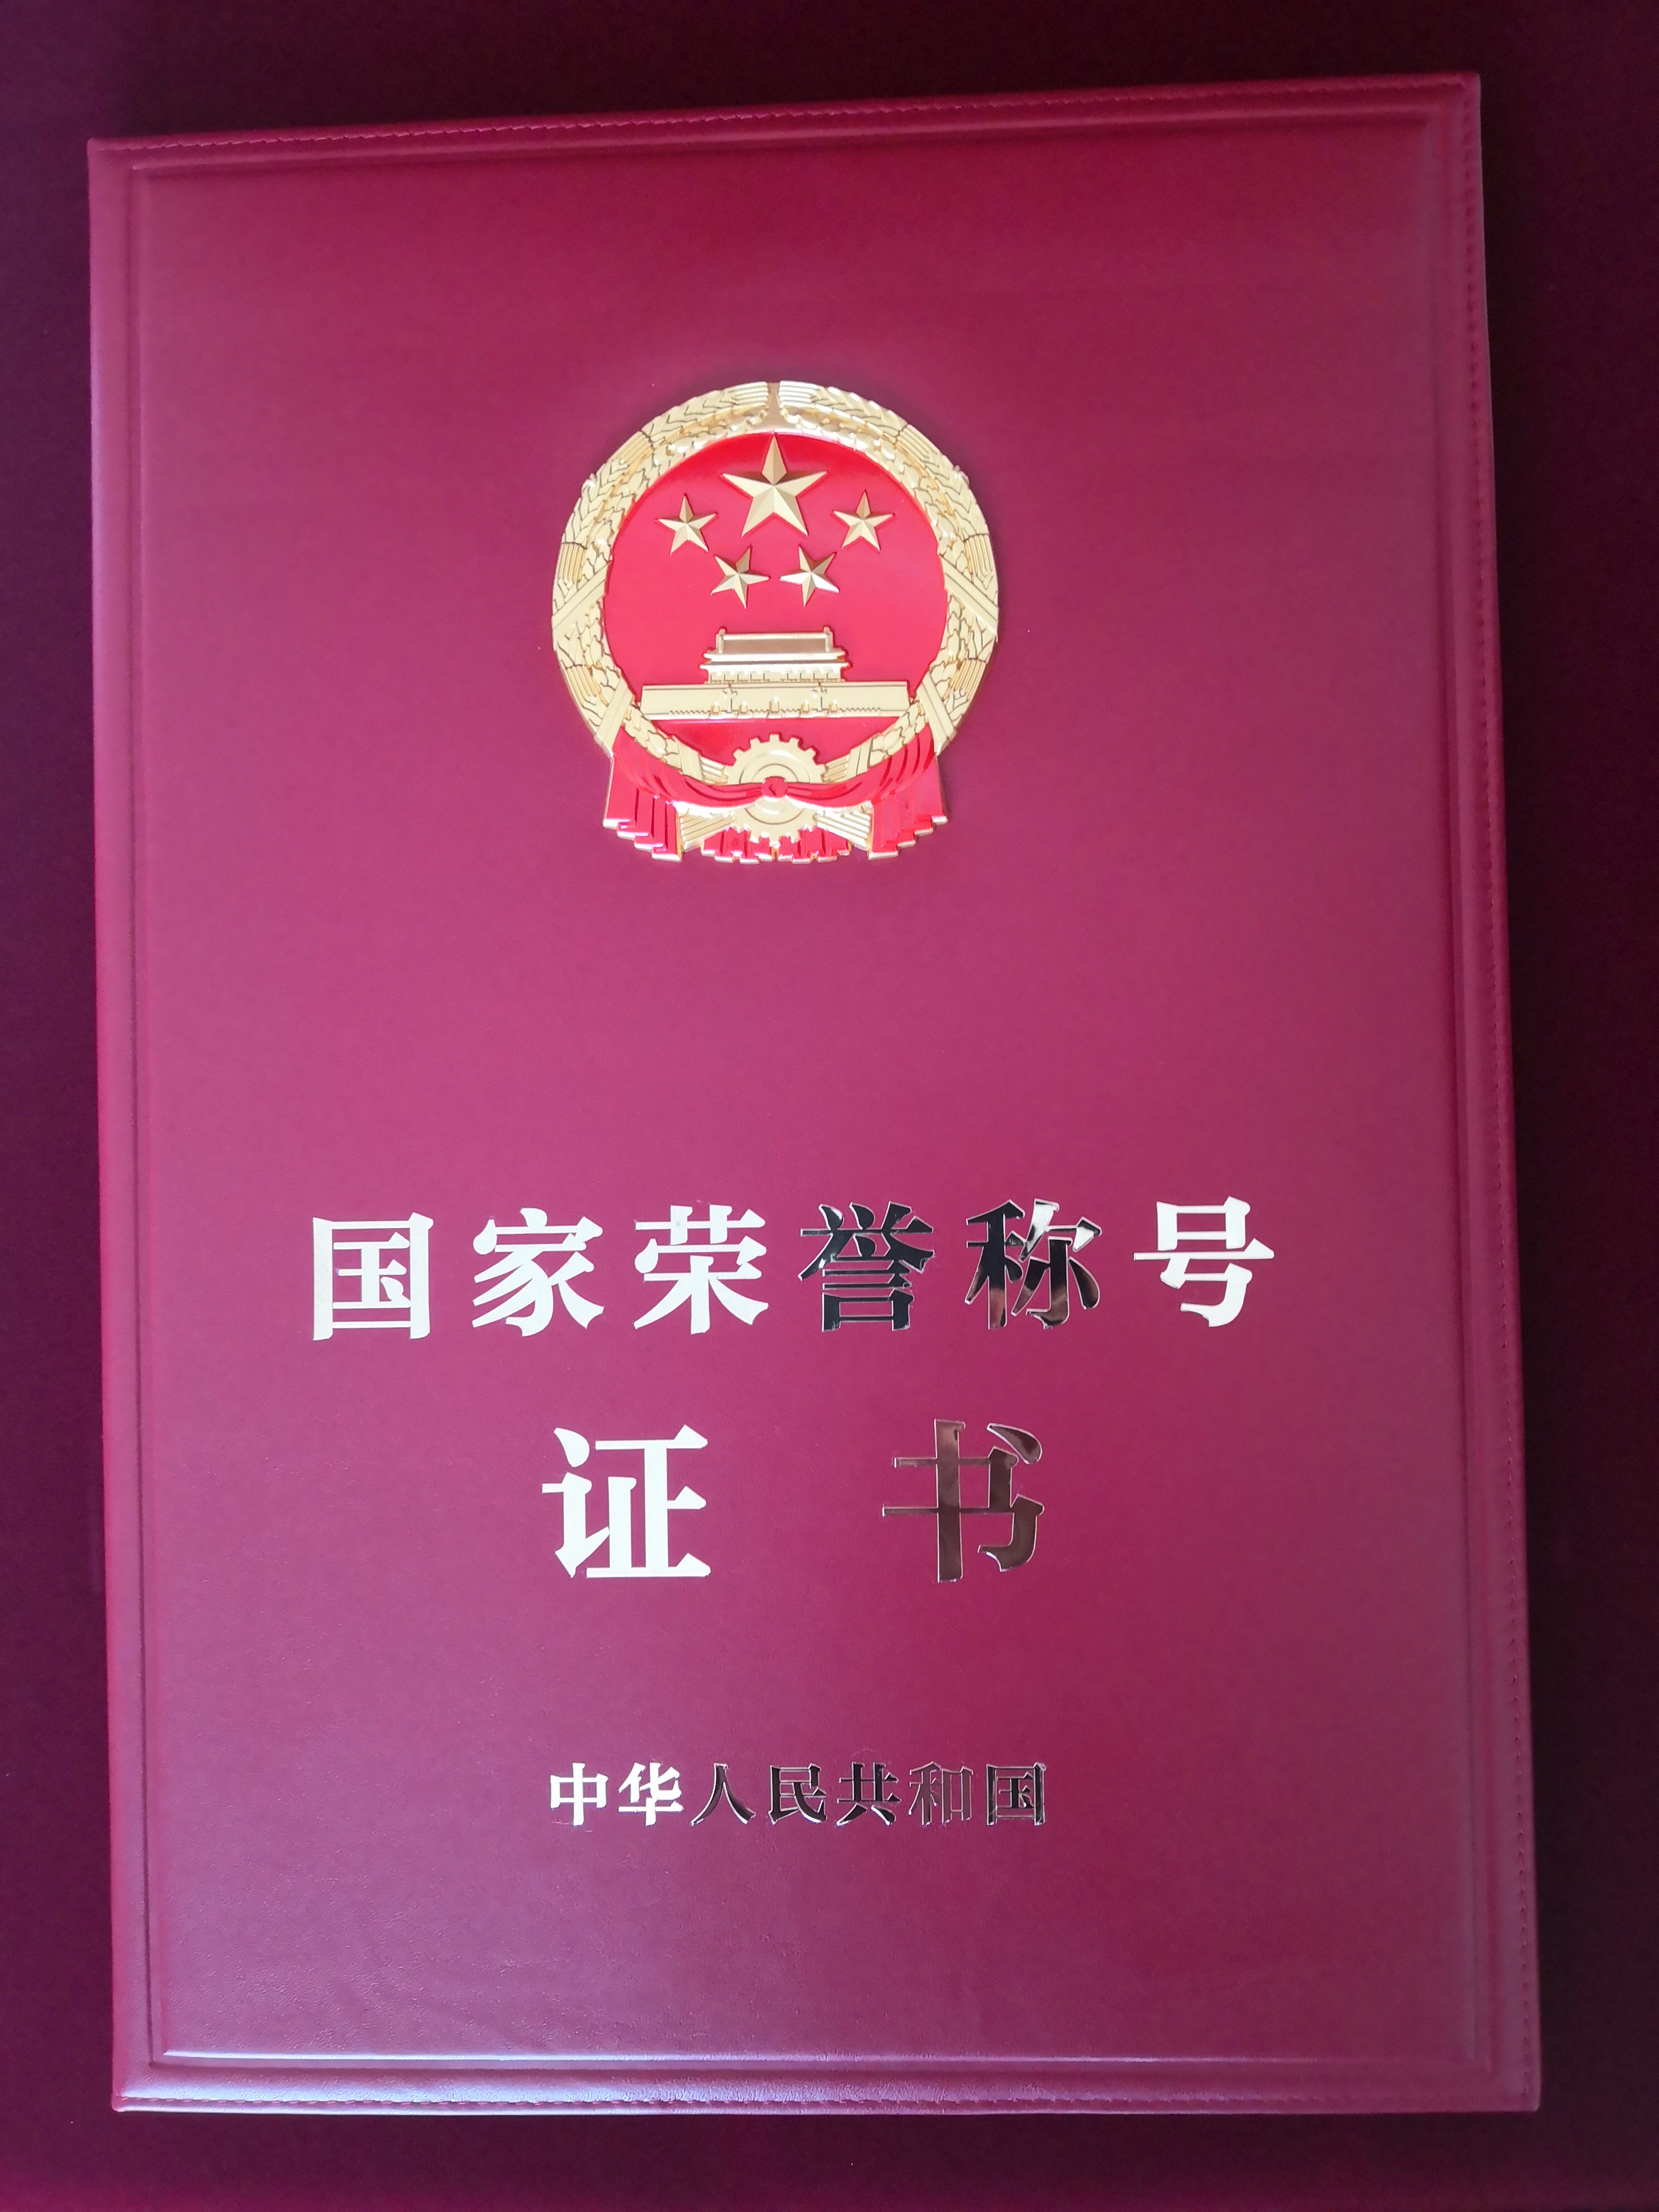 朱彦夫获得的国家荣誉称号证书